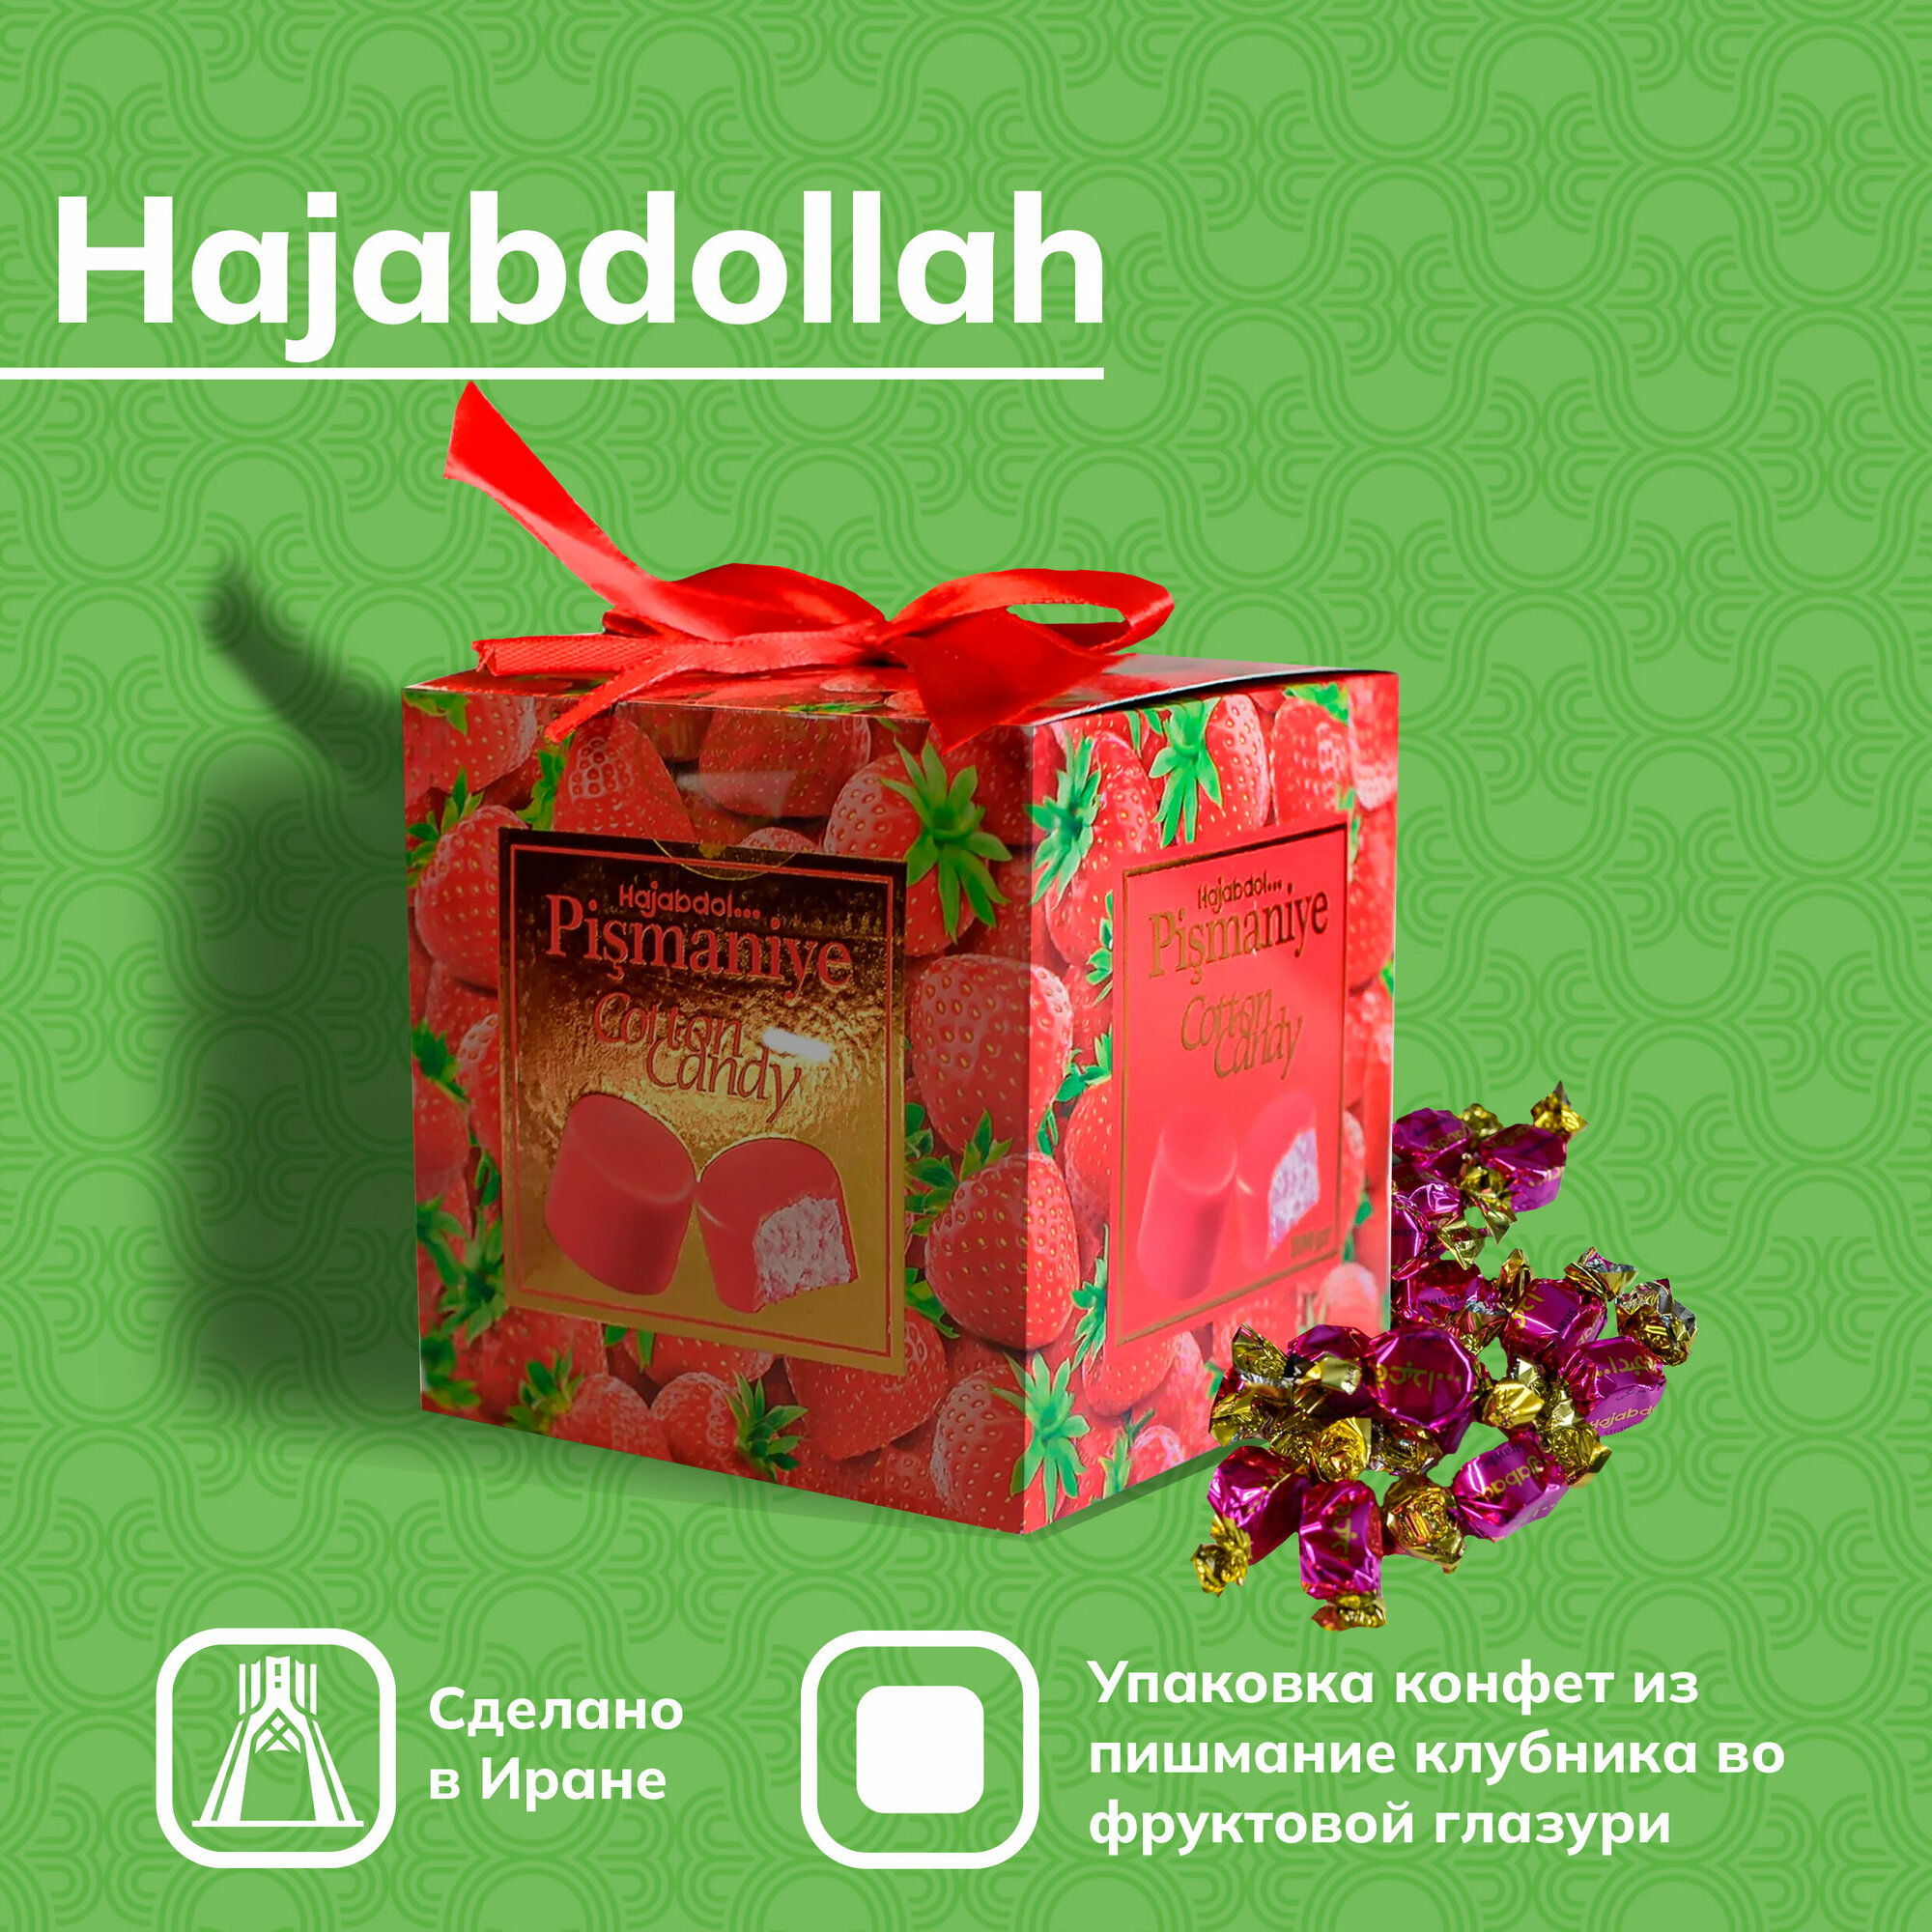 Конфеты из пишмание Hajabdollah клубника во фруктовой глазури 300 г - фотография № 1